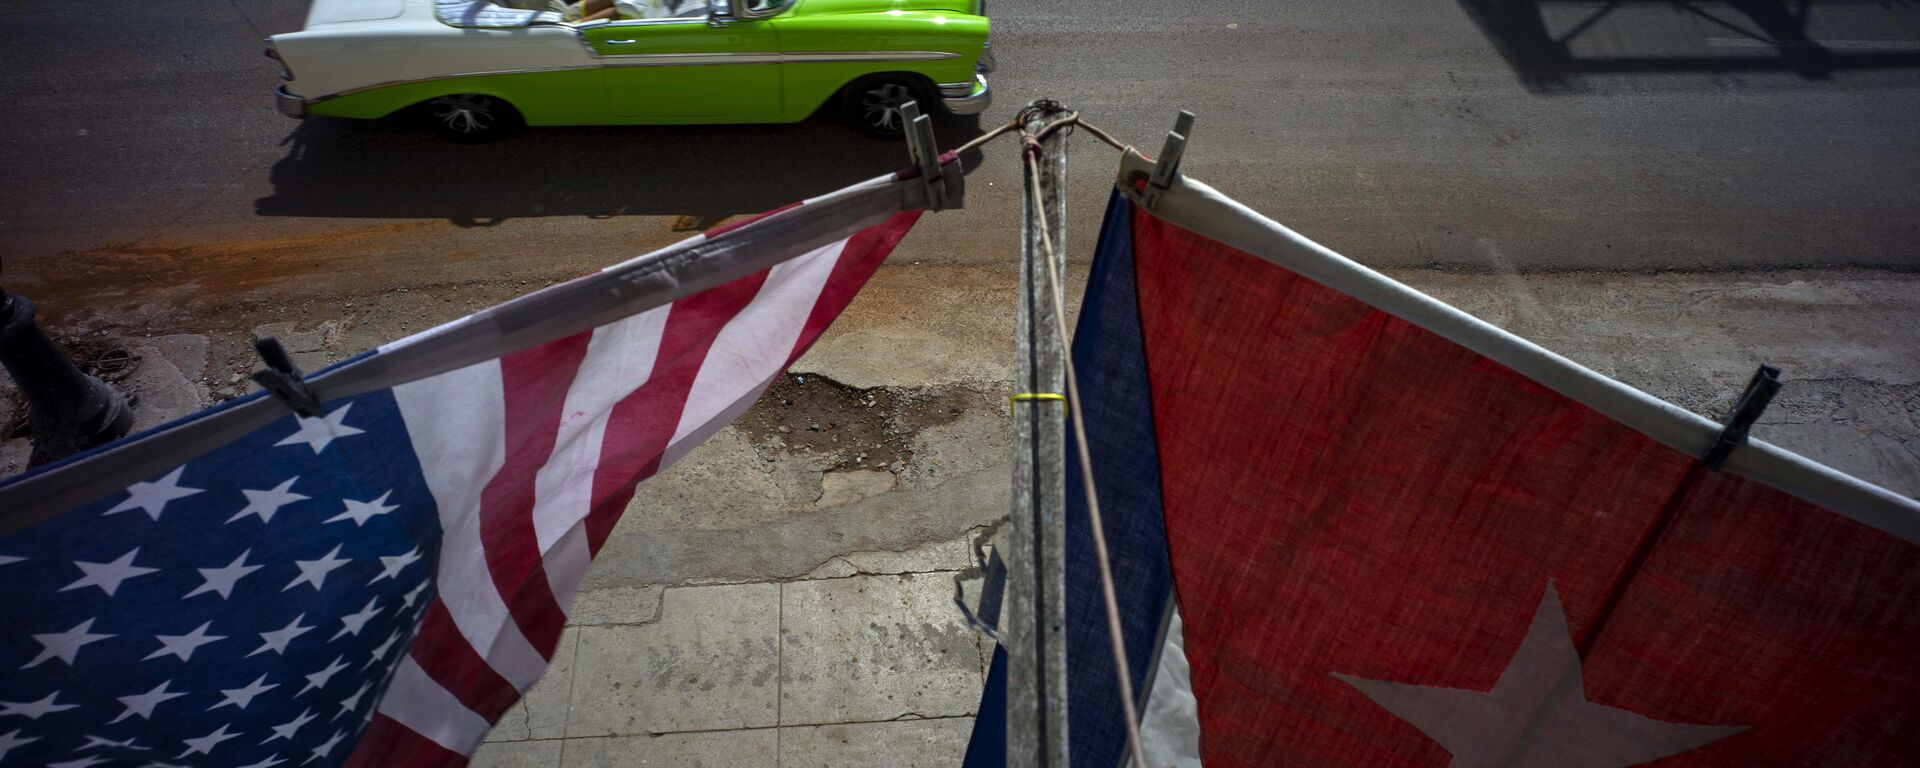 Banderas de EEUU y Cuba en La Habana - Sputnik Mundo, 1920, 02.06.2021